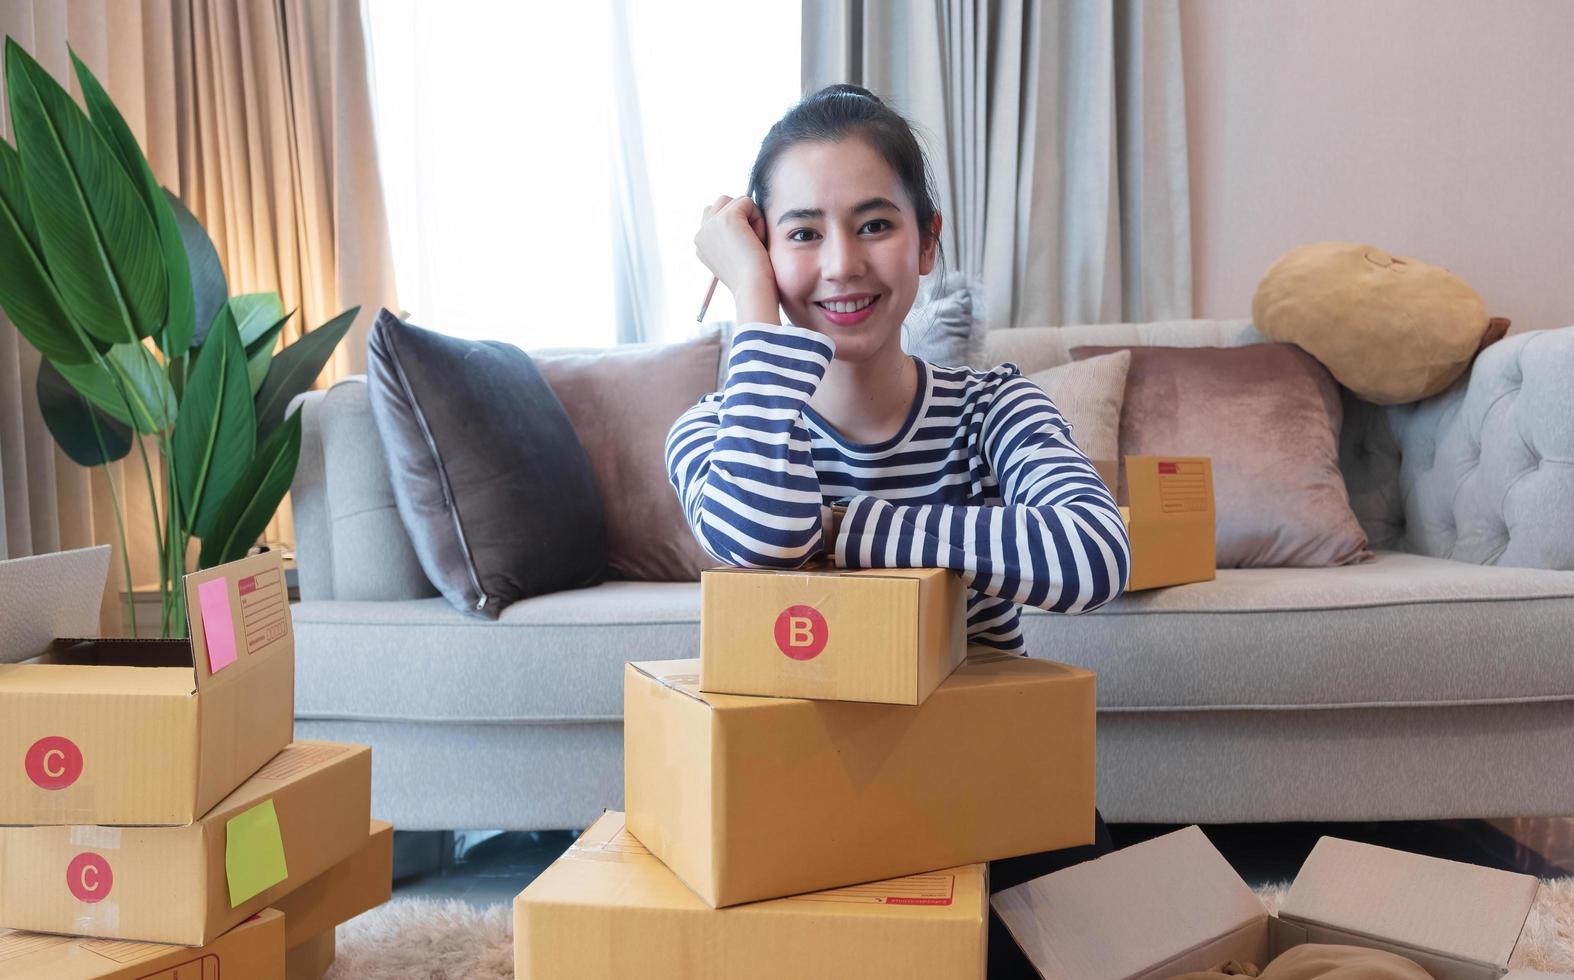 kleine ondernemer mkb-ondernemer van jonge aziatische vrouwen die met laptop werken om thuis online te winkelen, vrolijk en blij met doos voor verpakking in huis, eigen bedrijf opstarten voor online zaken foto